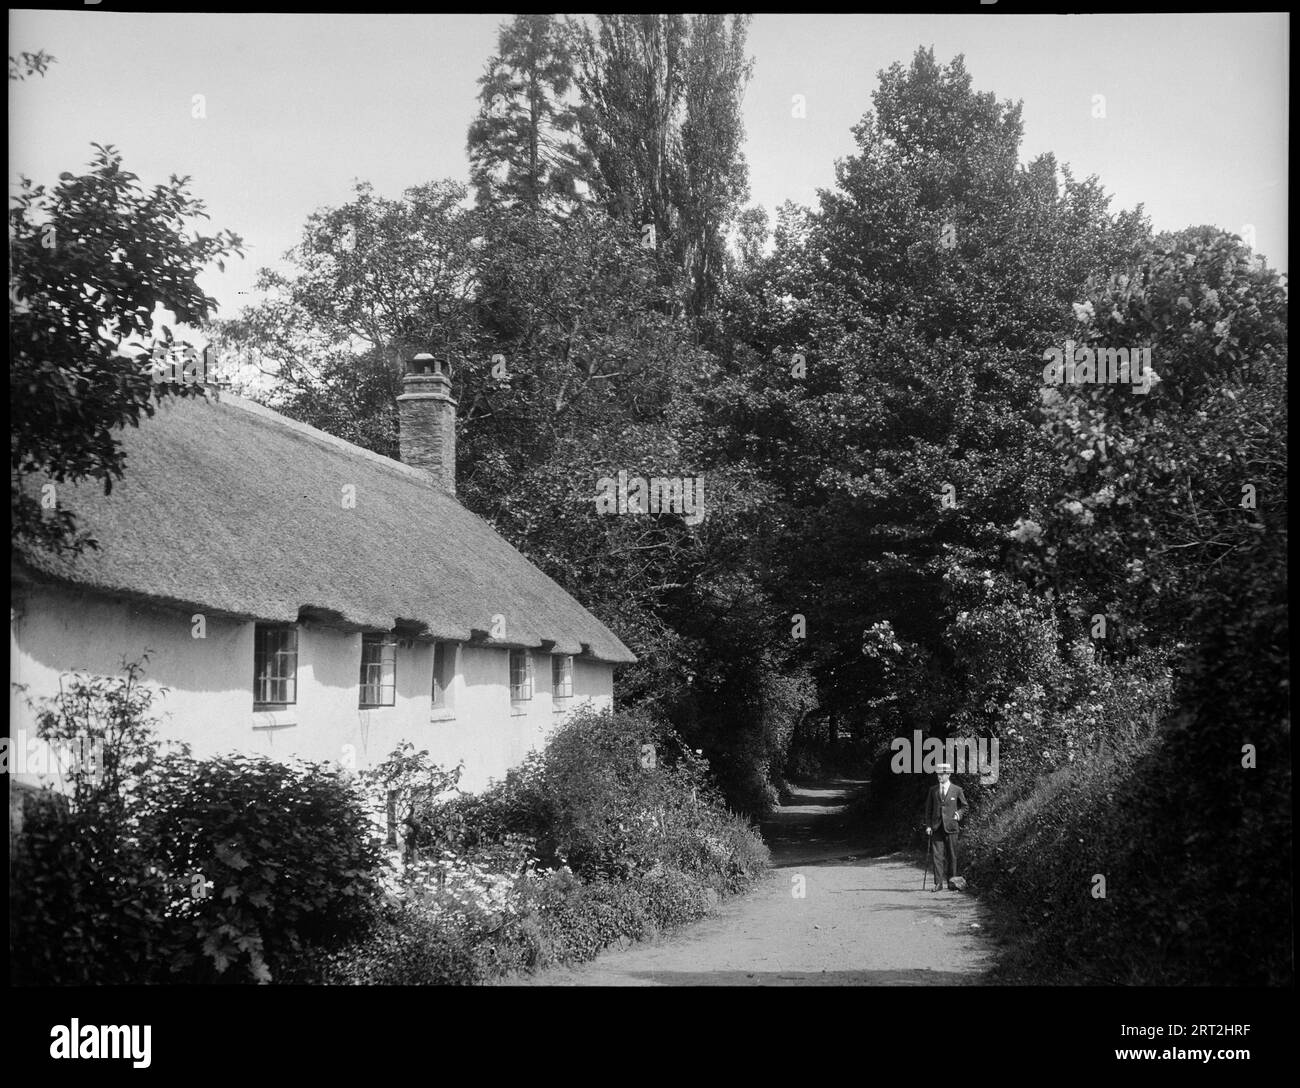 Dunster, West Somerset, Somerset, 1940-1953. Blick auf eine Spur in Dunster mit einem niedrigen reetgedeckten Cottage auf der linken Seite und einem Mann auf der rechten Seite der Straße. Blick auf eine Spur in Dunster mit einem niedrigen Cottage auf der linken Seite der Straße. Es verfügt über ein Strohdach und fünf sichtbare Fenster im oberen Stockwerk. Der untere Teil des Hauses ist durch Laub verdeckt. Auf der rechten Seite der Straße, gegenüber der Hütte, steht ein Mann, der das Haus betrachtet, mit einem Gehstock in der rechten Hand und seiner linken Hand in seiner Manteltasche. Die Straße hinter ihm hat überhängende Bäume auf beiden Seiten. Stockfoto